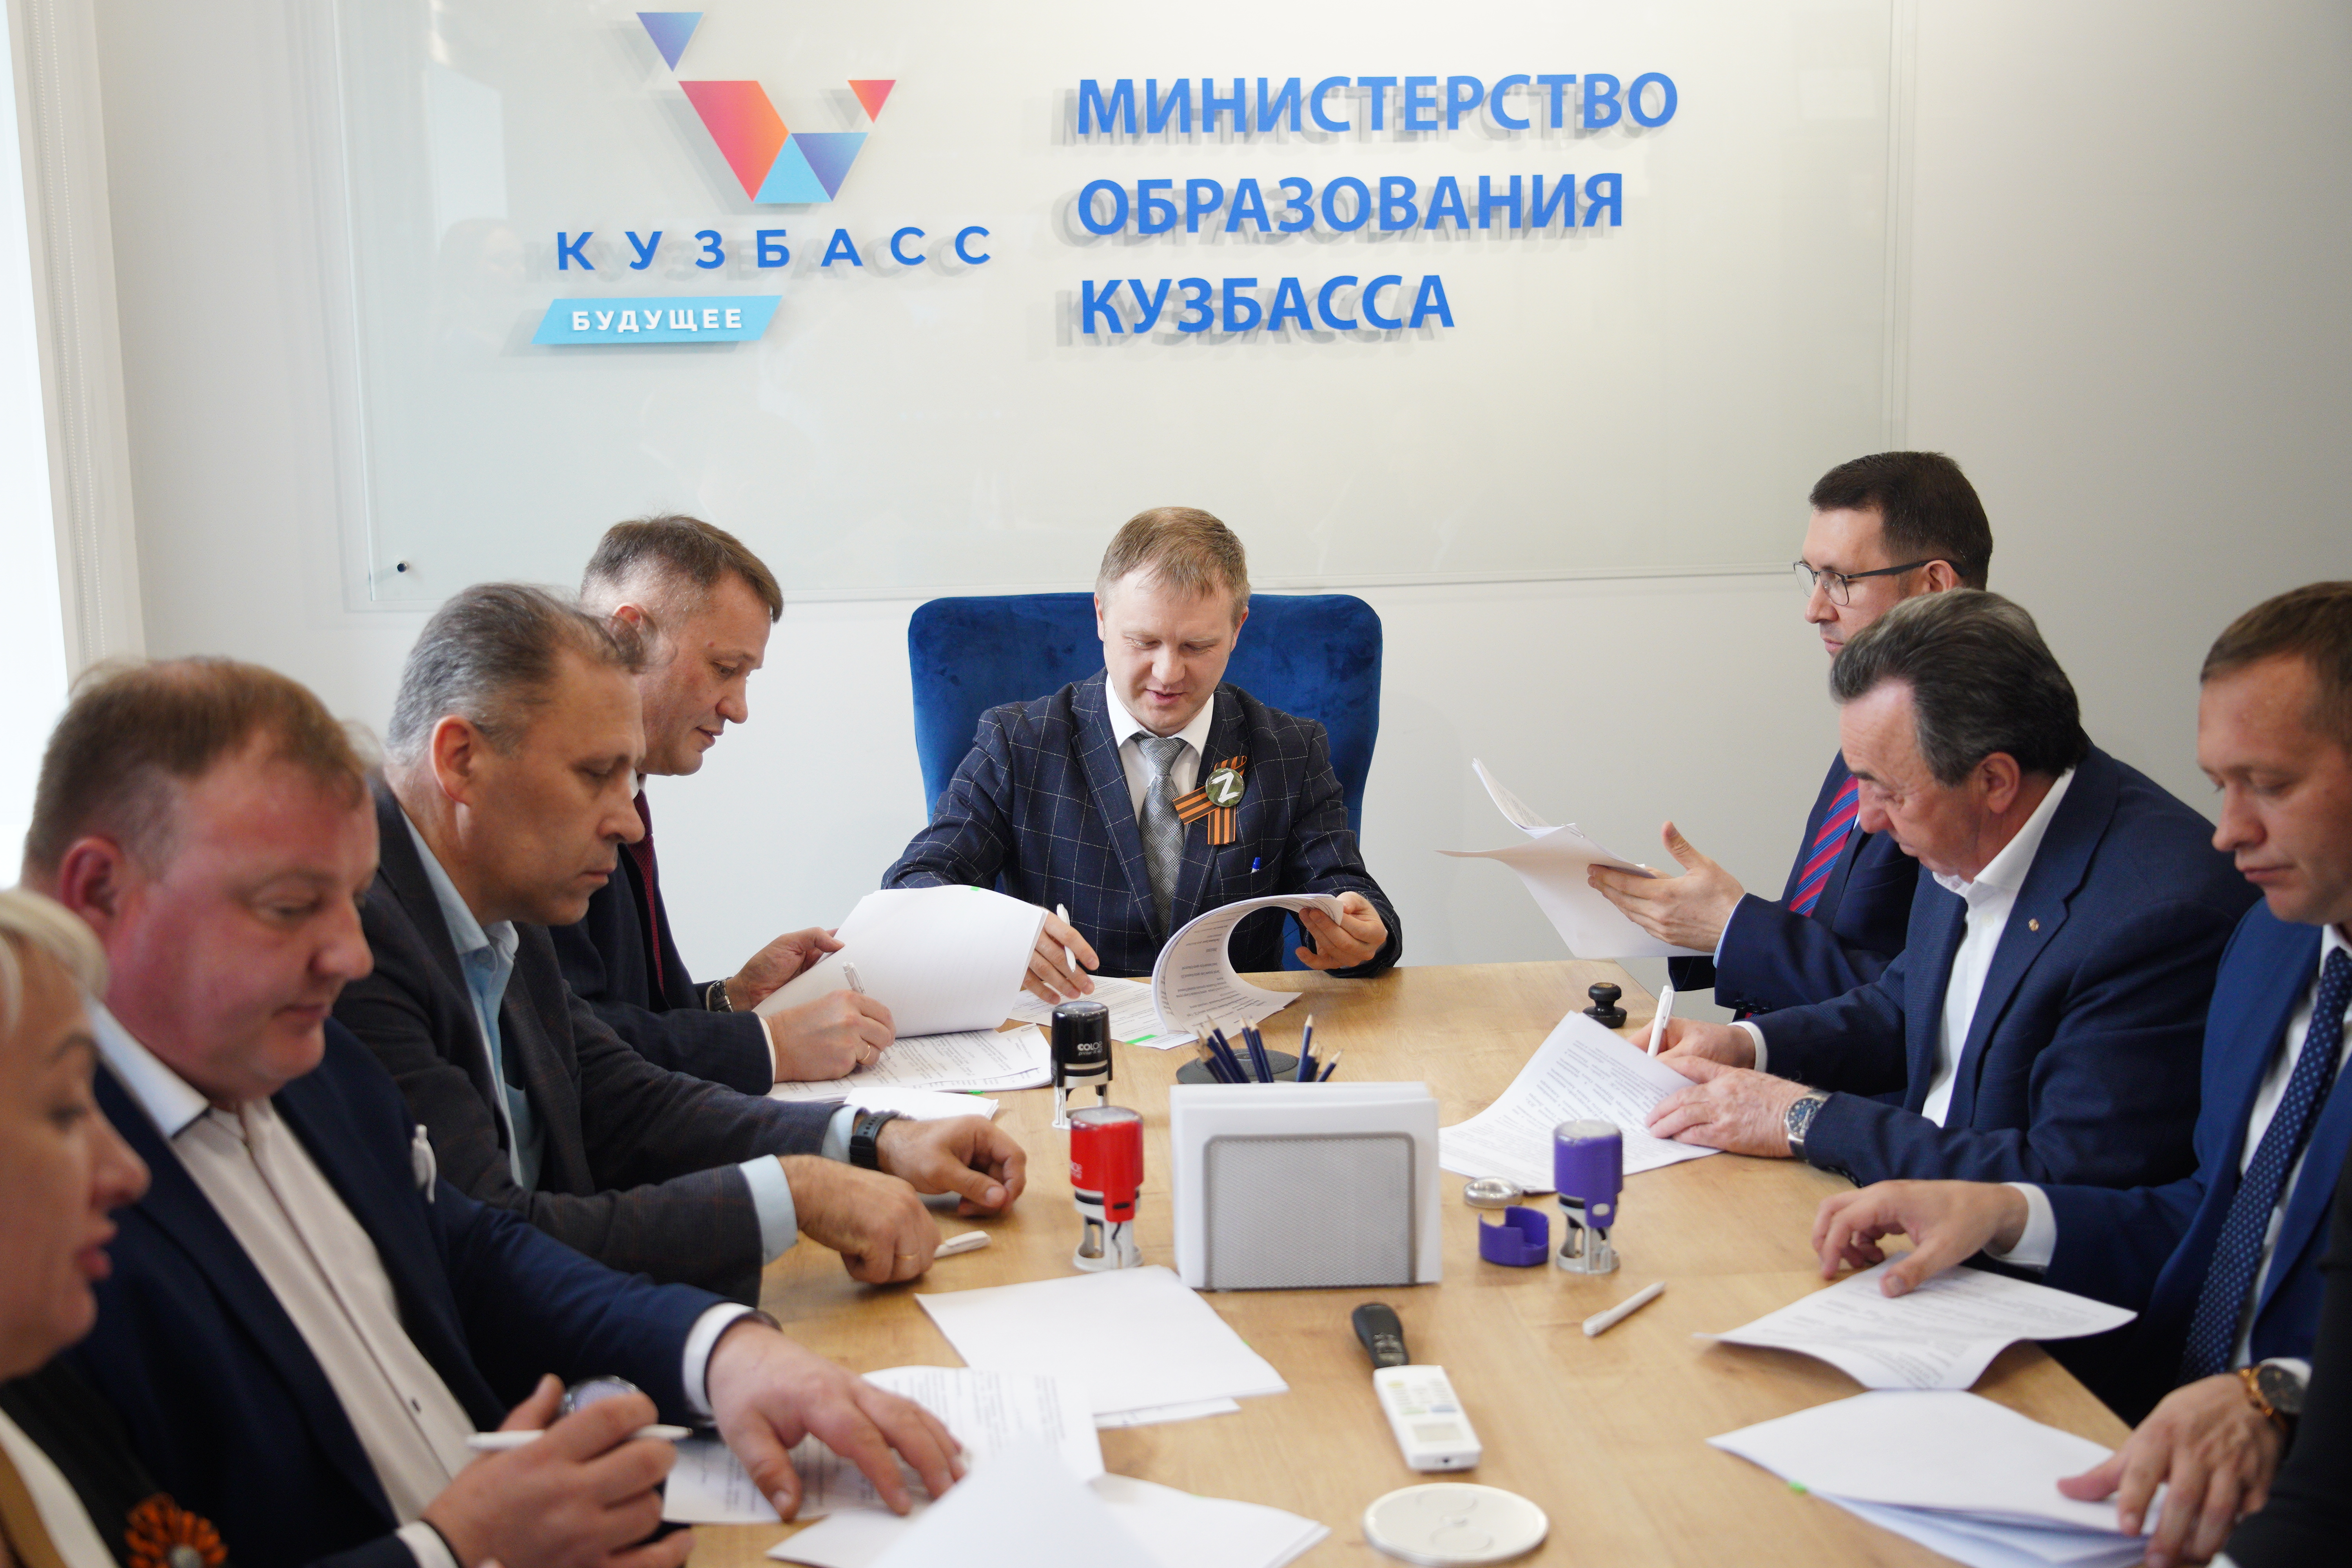 Руководители 22 организаций подписали соглашения для создания в Кузбассе трех образовательно-производственных кластеров  